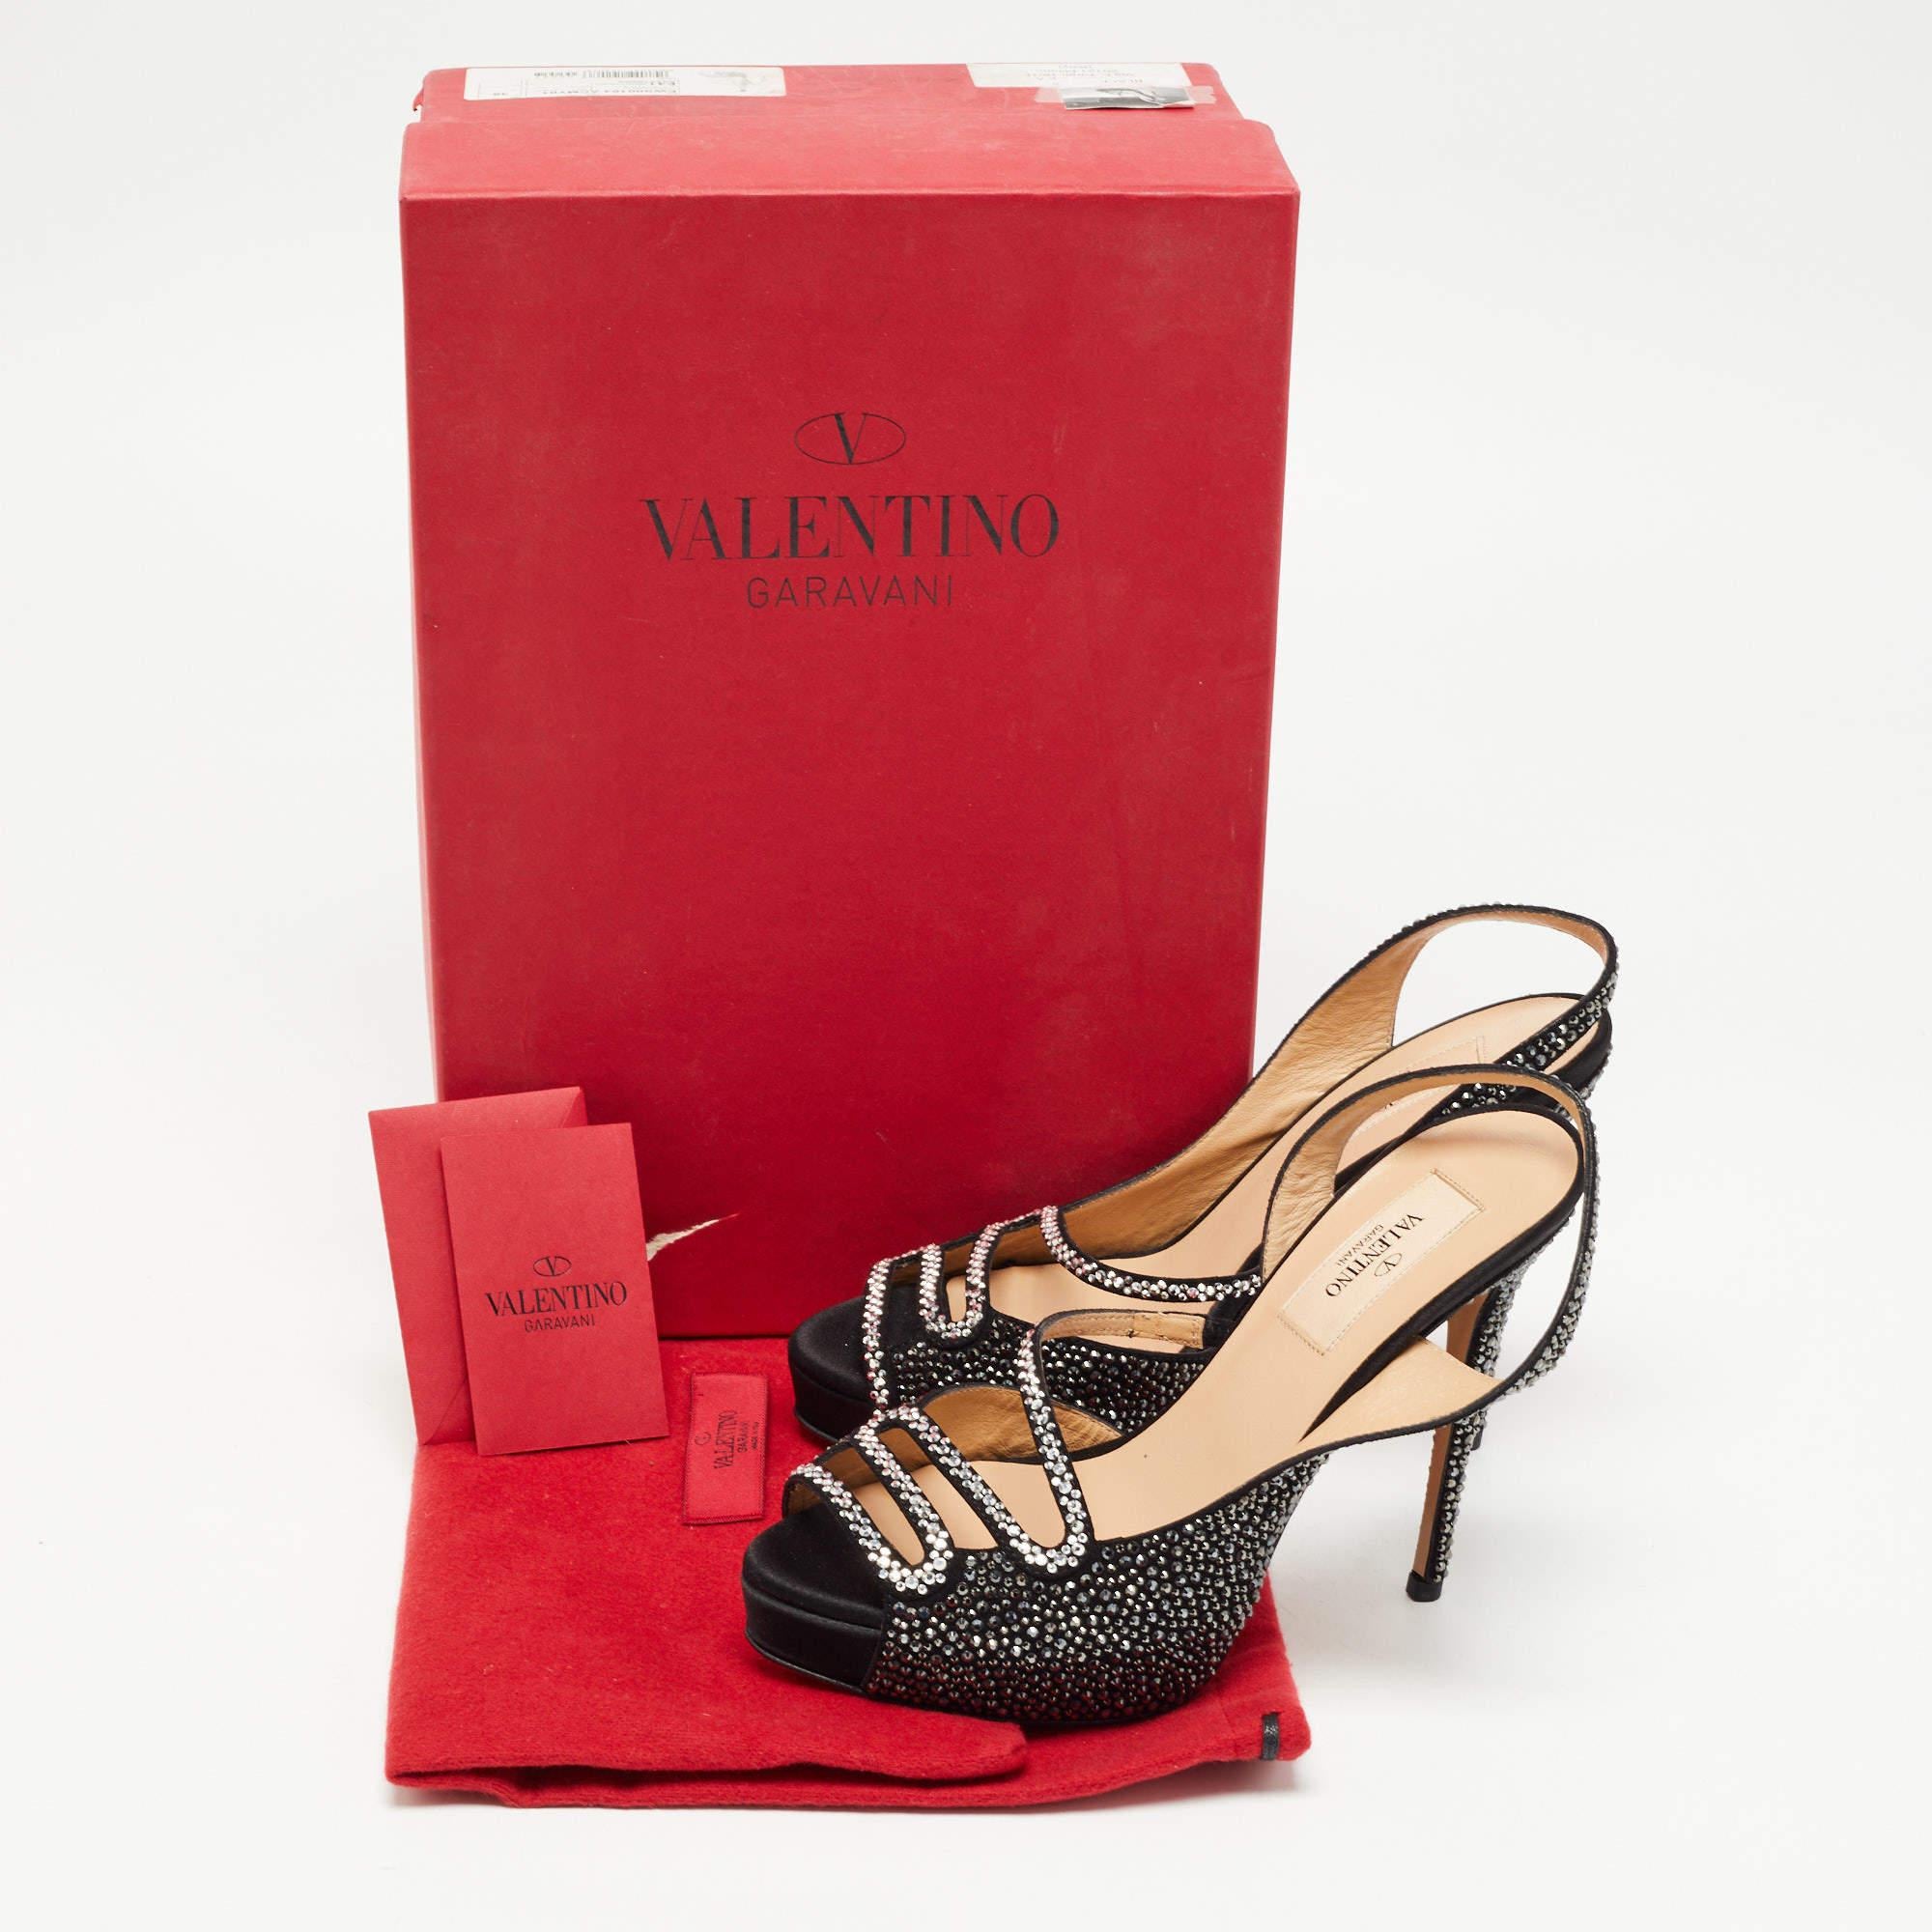 Valentino Black Suede and Crystal Embellished Slingback Sandals Size 36 7